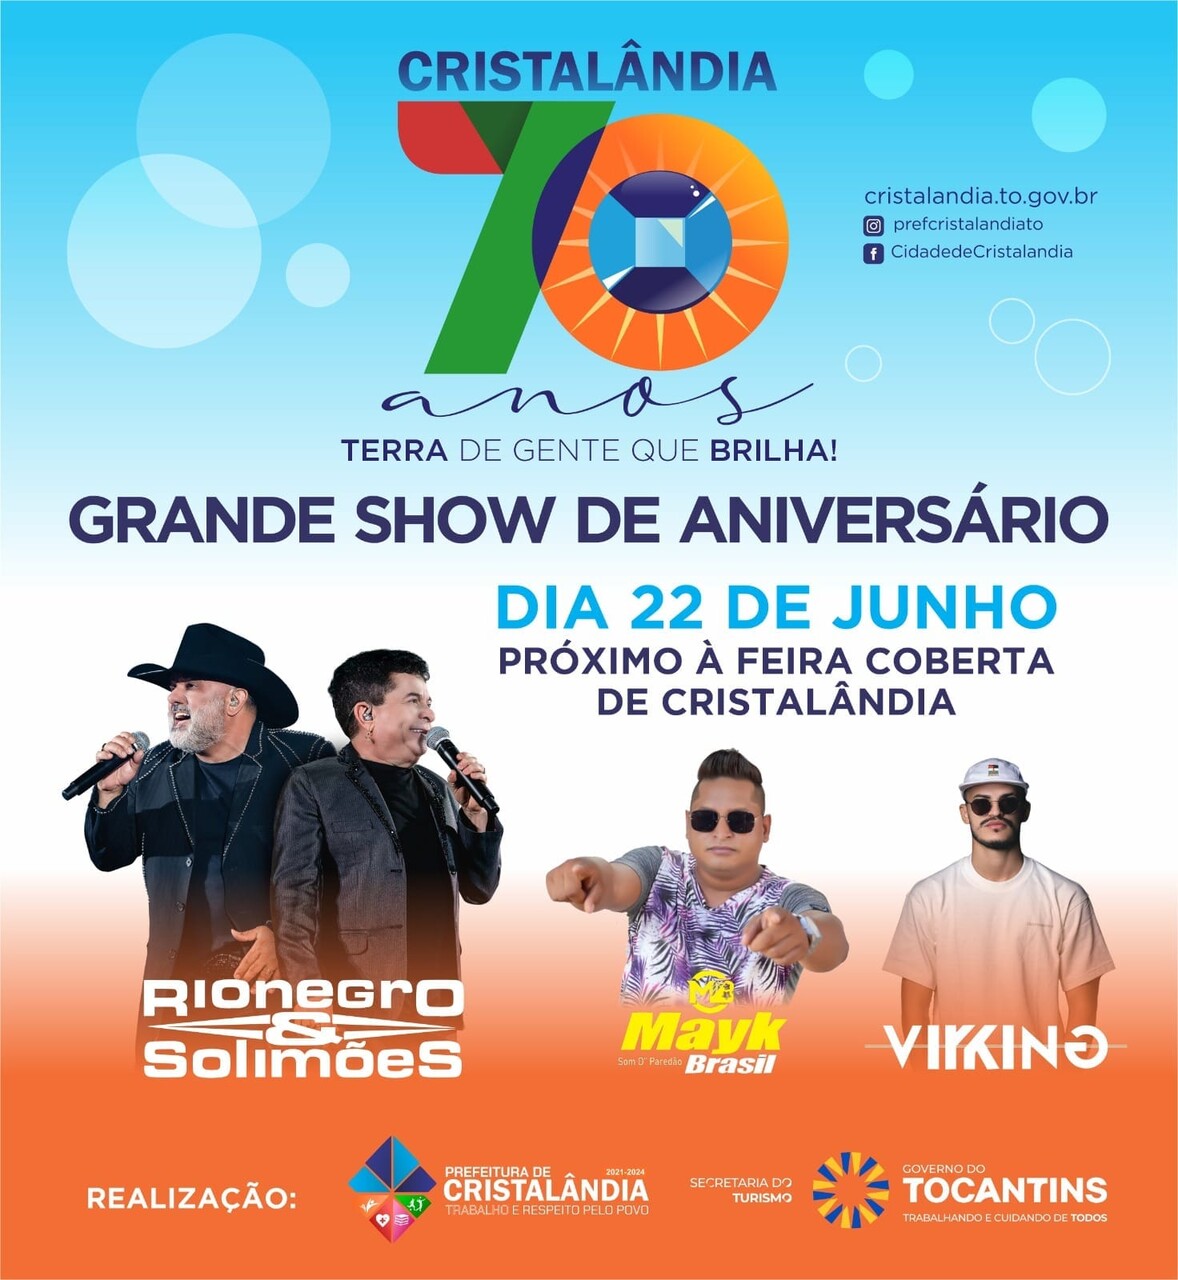 Aniversário de Cristalândia: 70 anos do município serão comemorados com show de Rio Negro & Solimões, desfile cívico e inaugurações